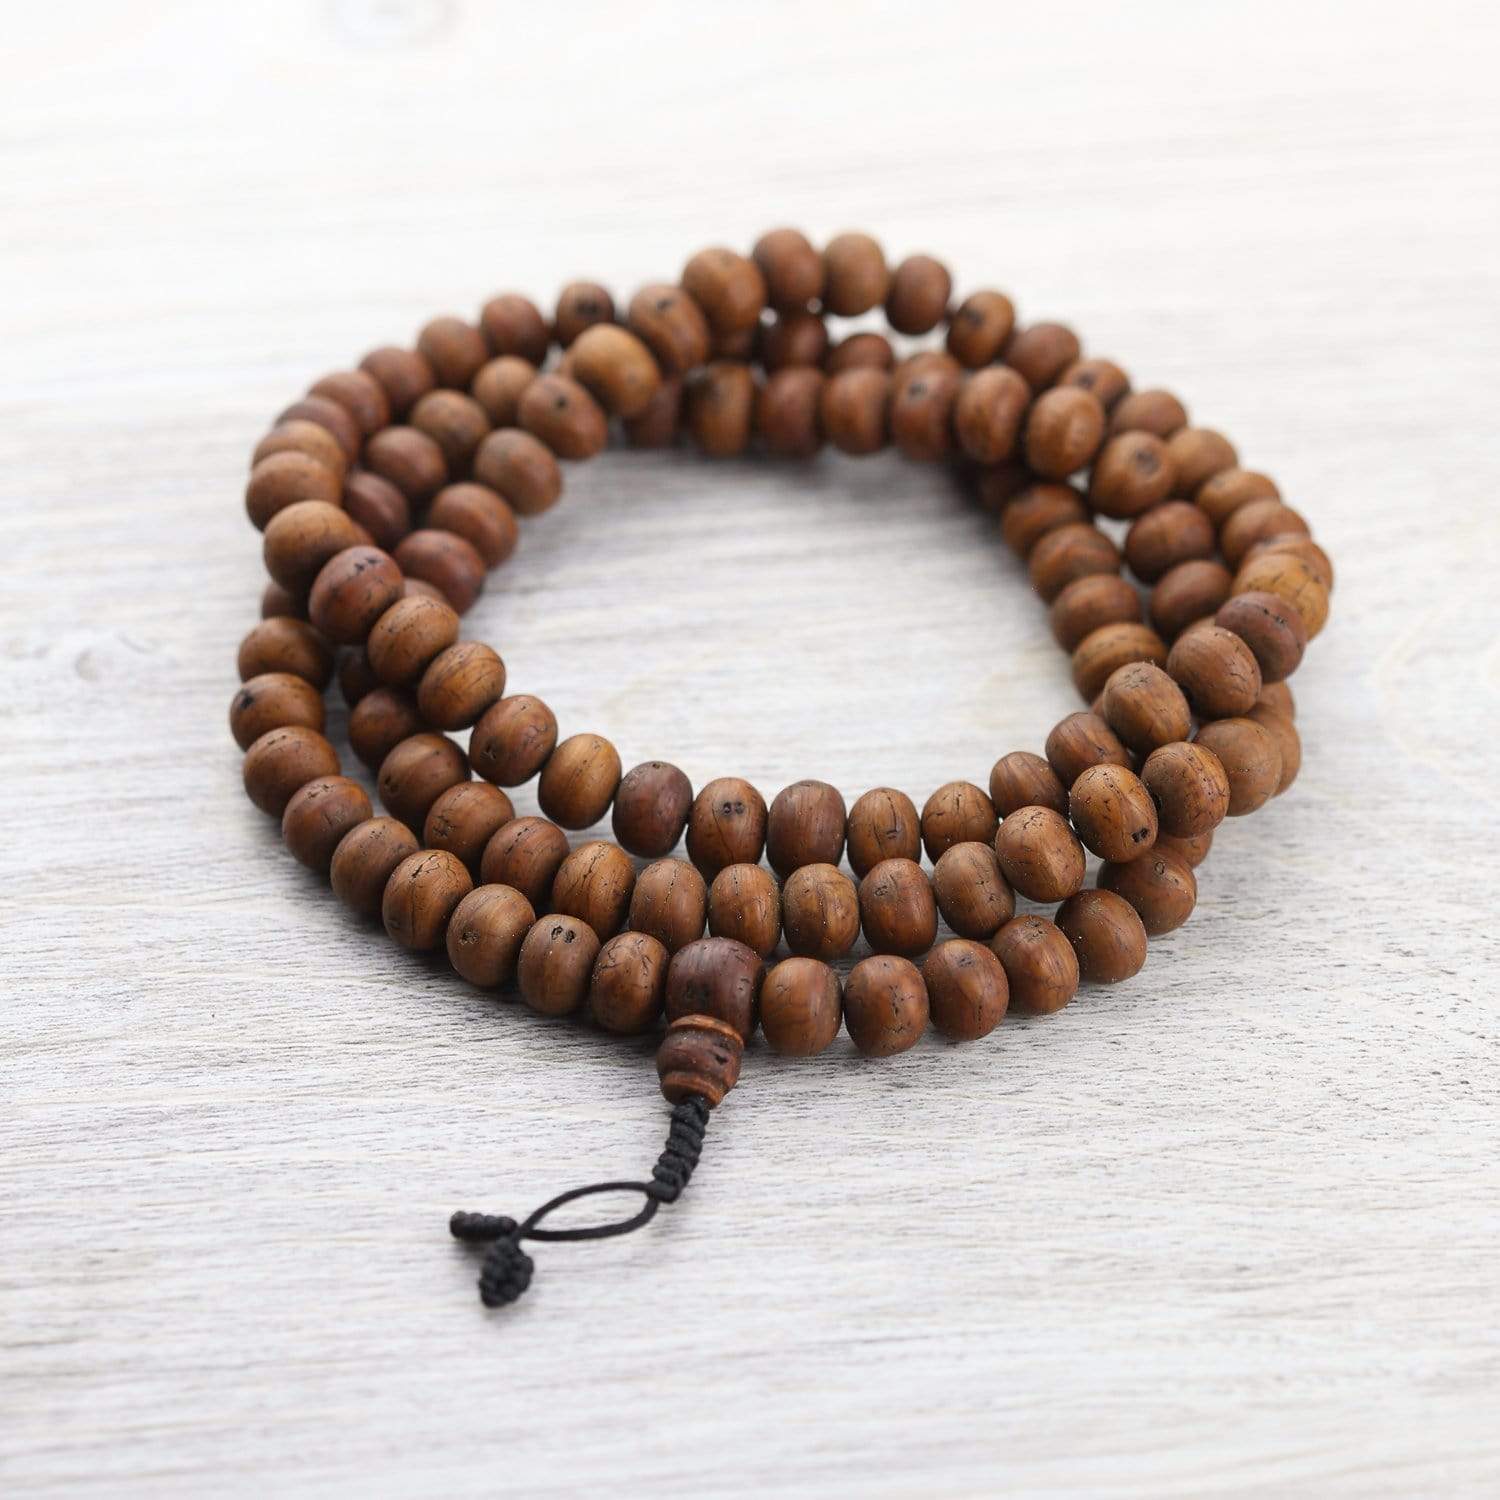 Buy FIBO STEEL 10 Pcs Wood Beaded Bracelet for Men Tibetan Buddhist  Meditation Mala Prayer Beads Bracelet Elastic at Amazonin